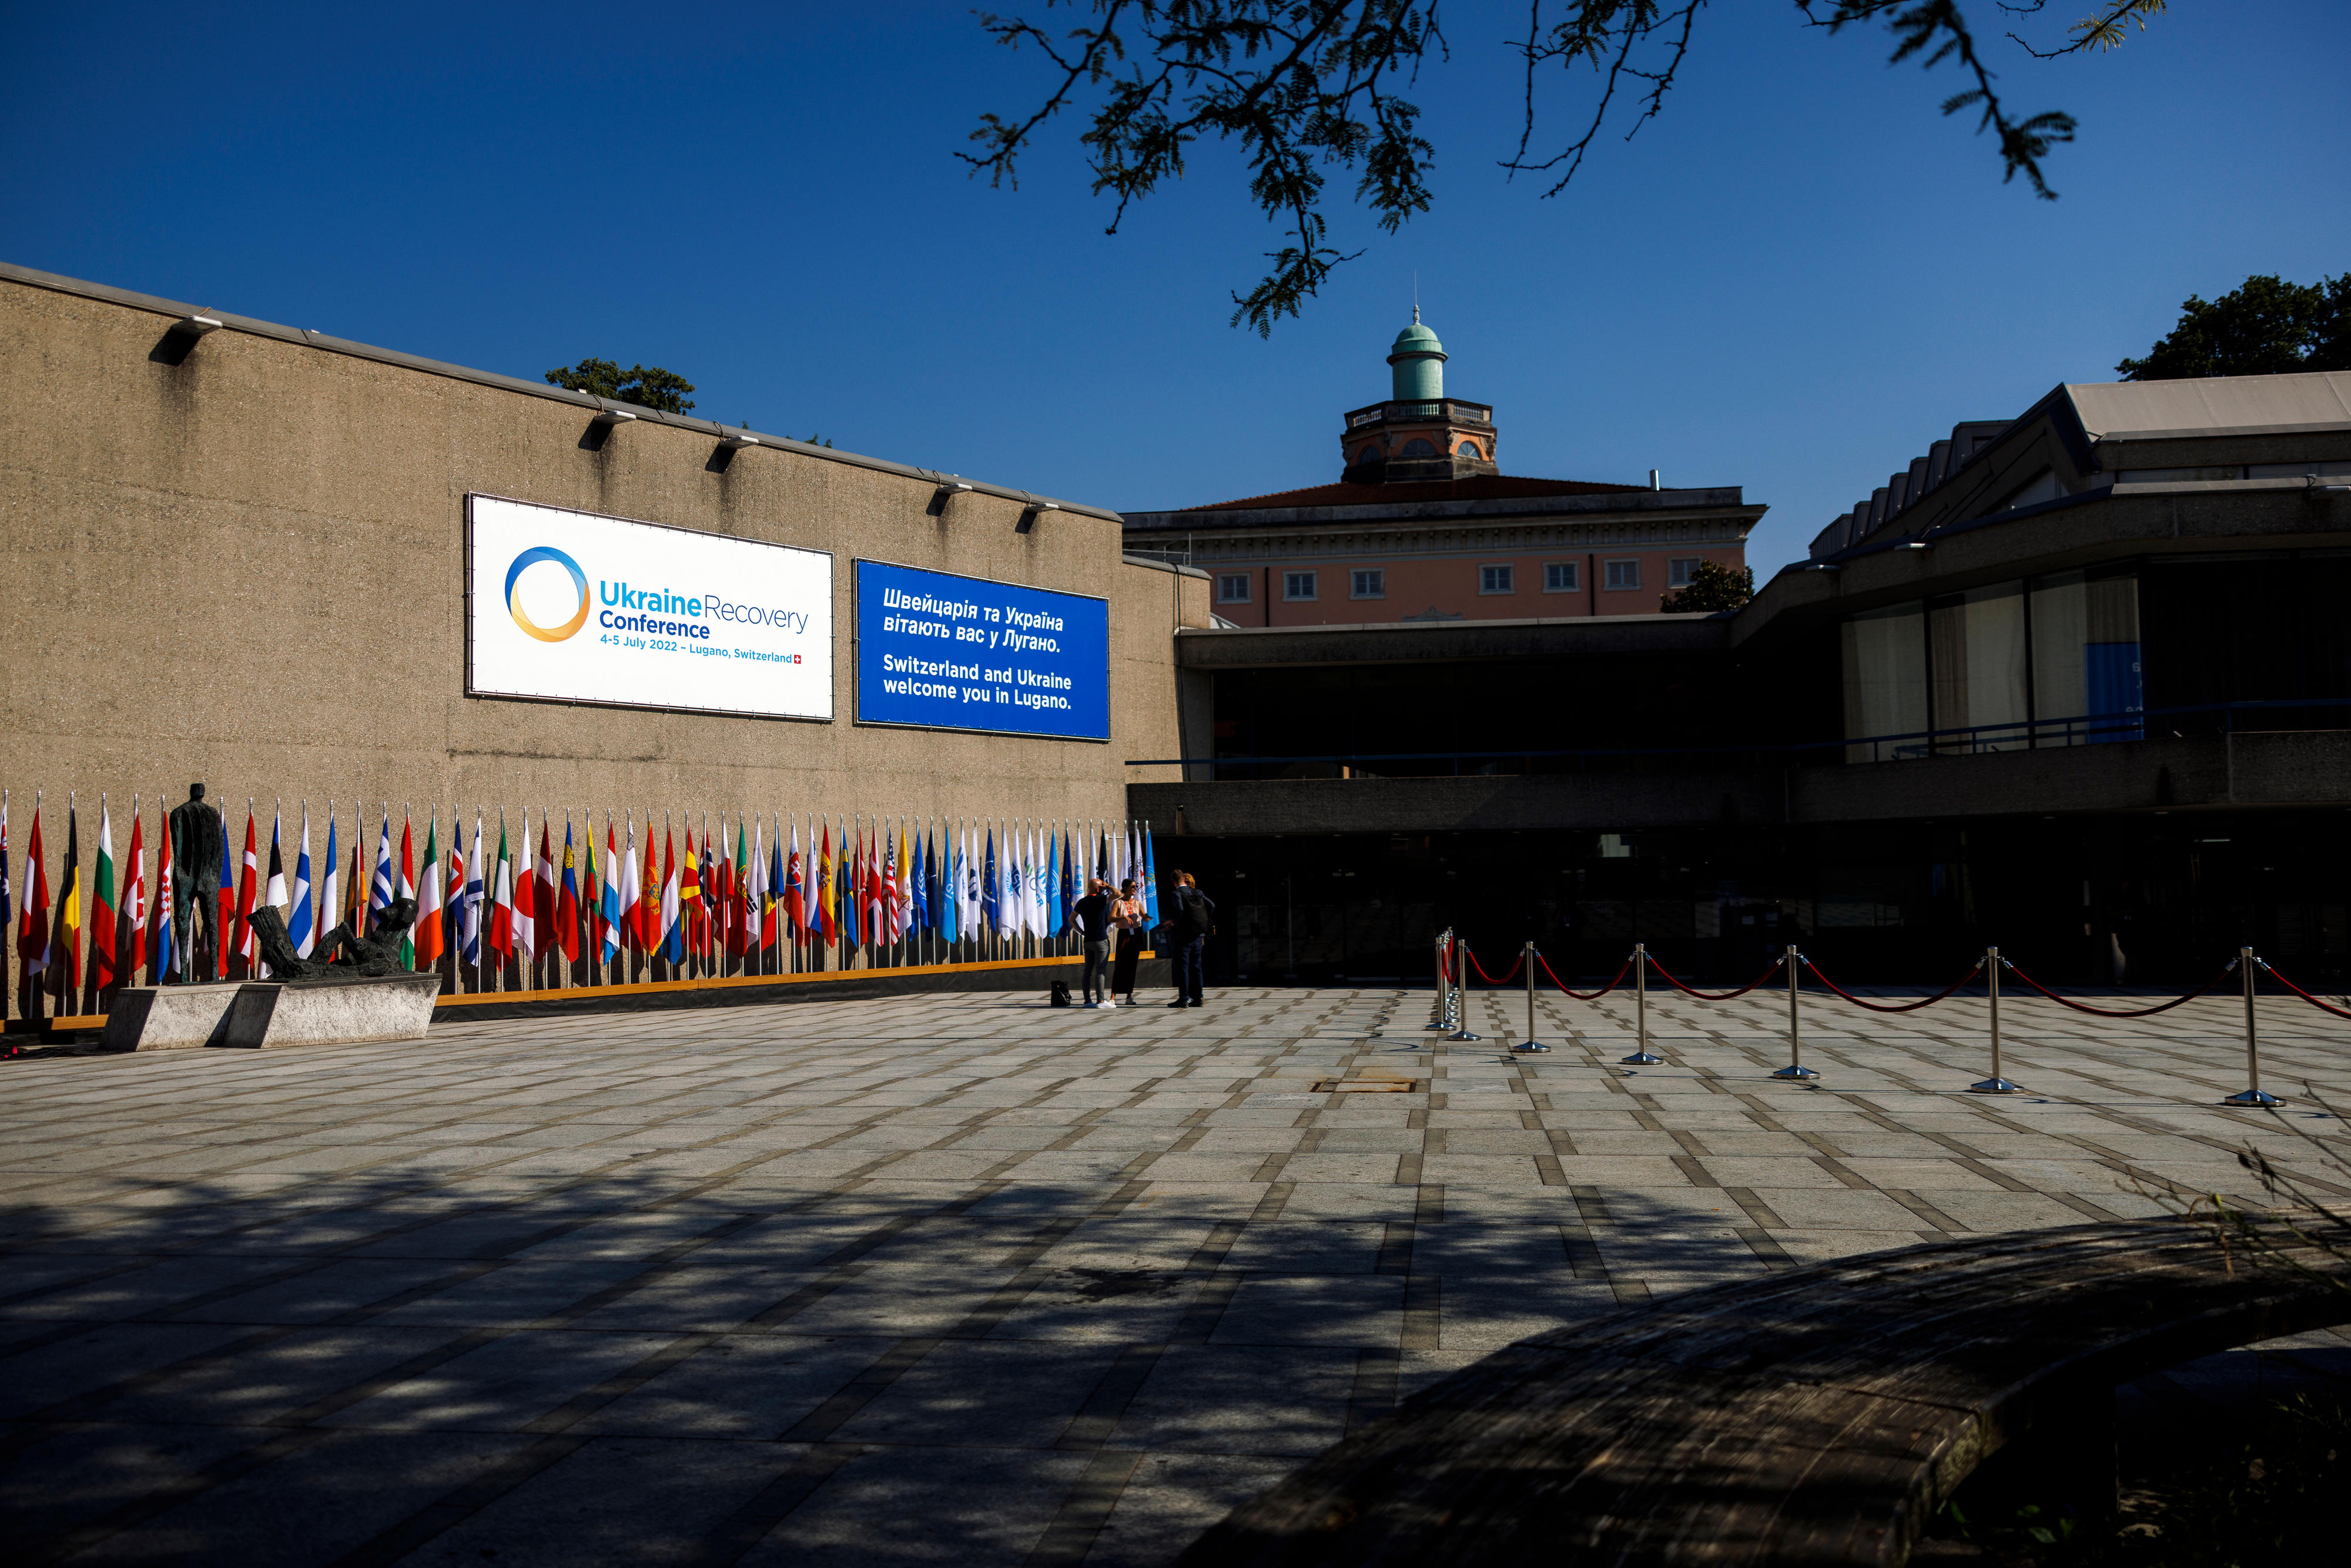 Der Eingang des Palazzo dei Congressi in Lugano, in dem die Ukraine Recovery Conference (URC) stattfindet